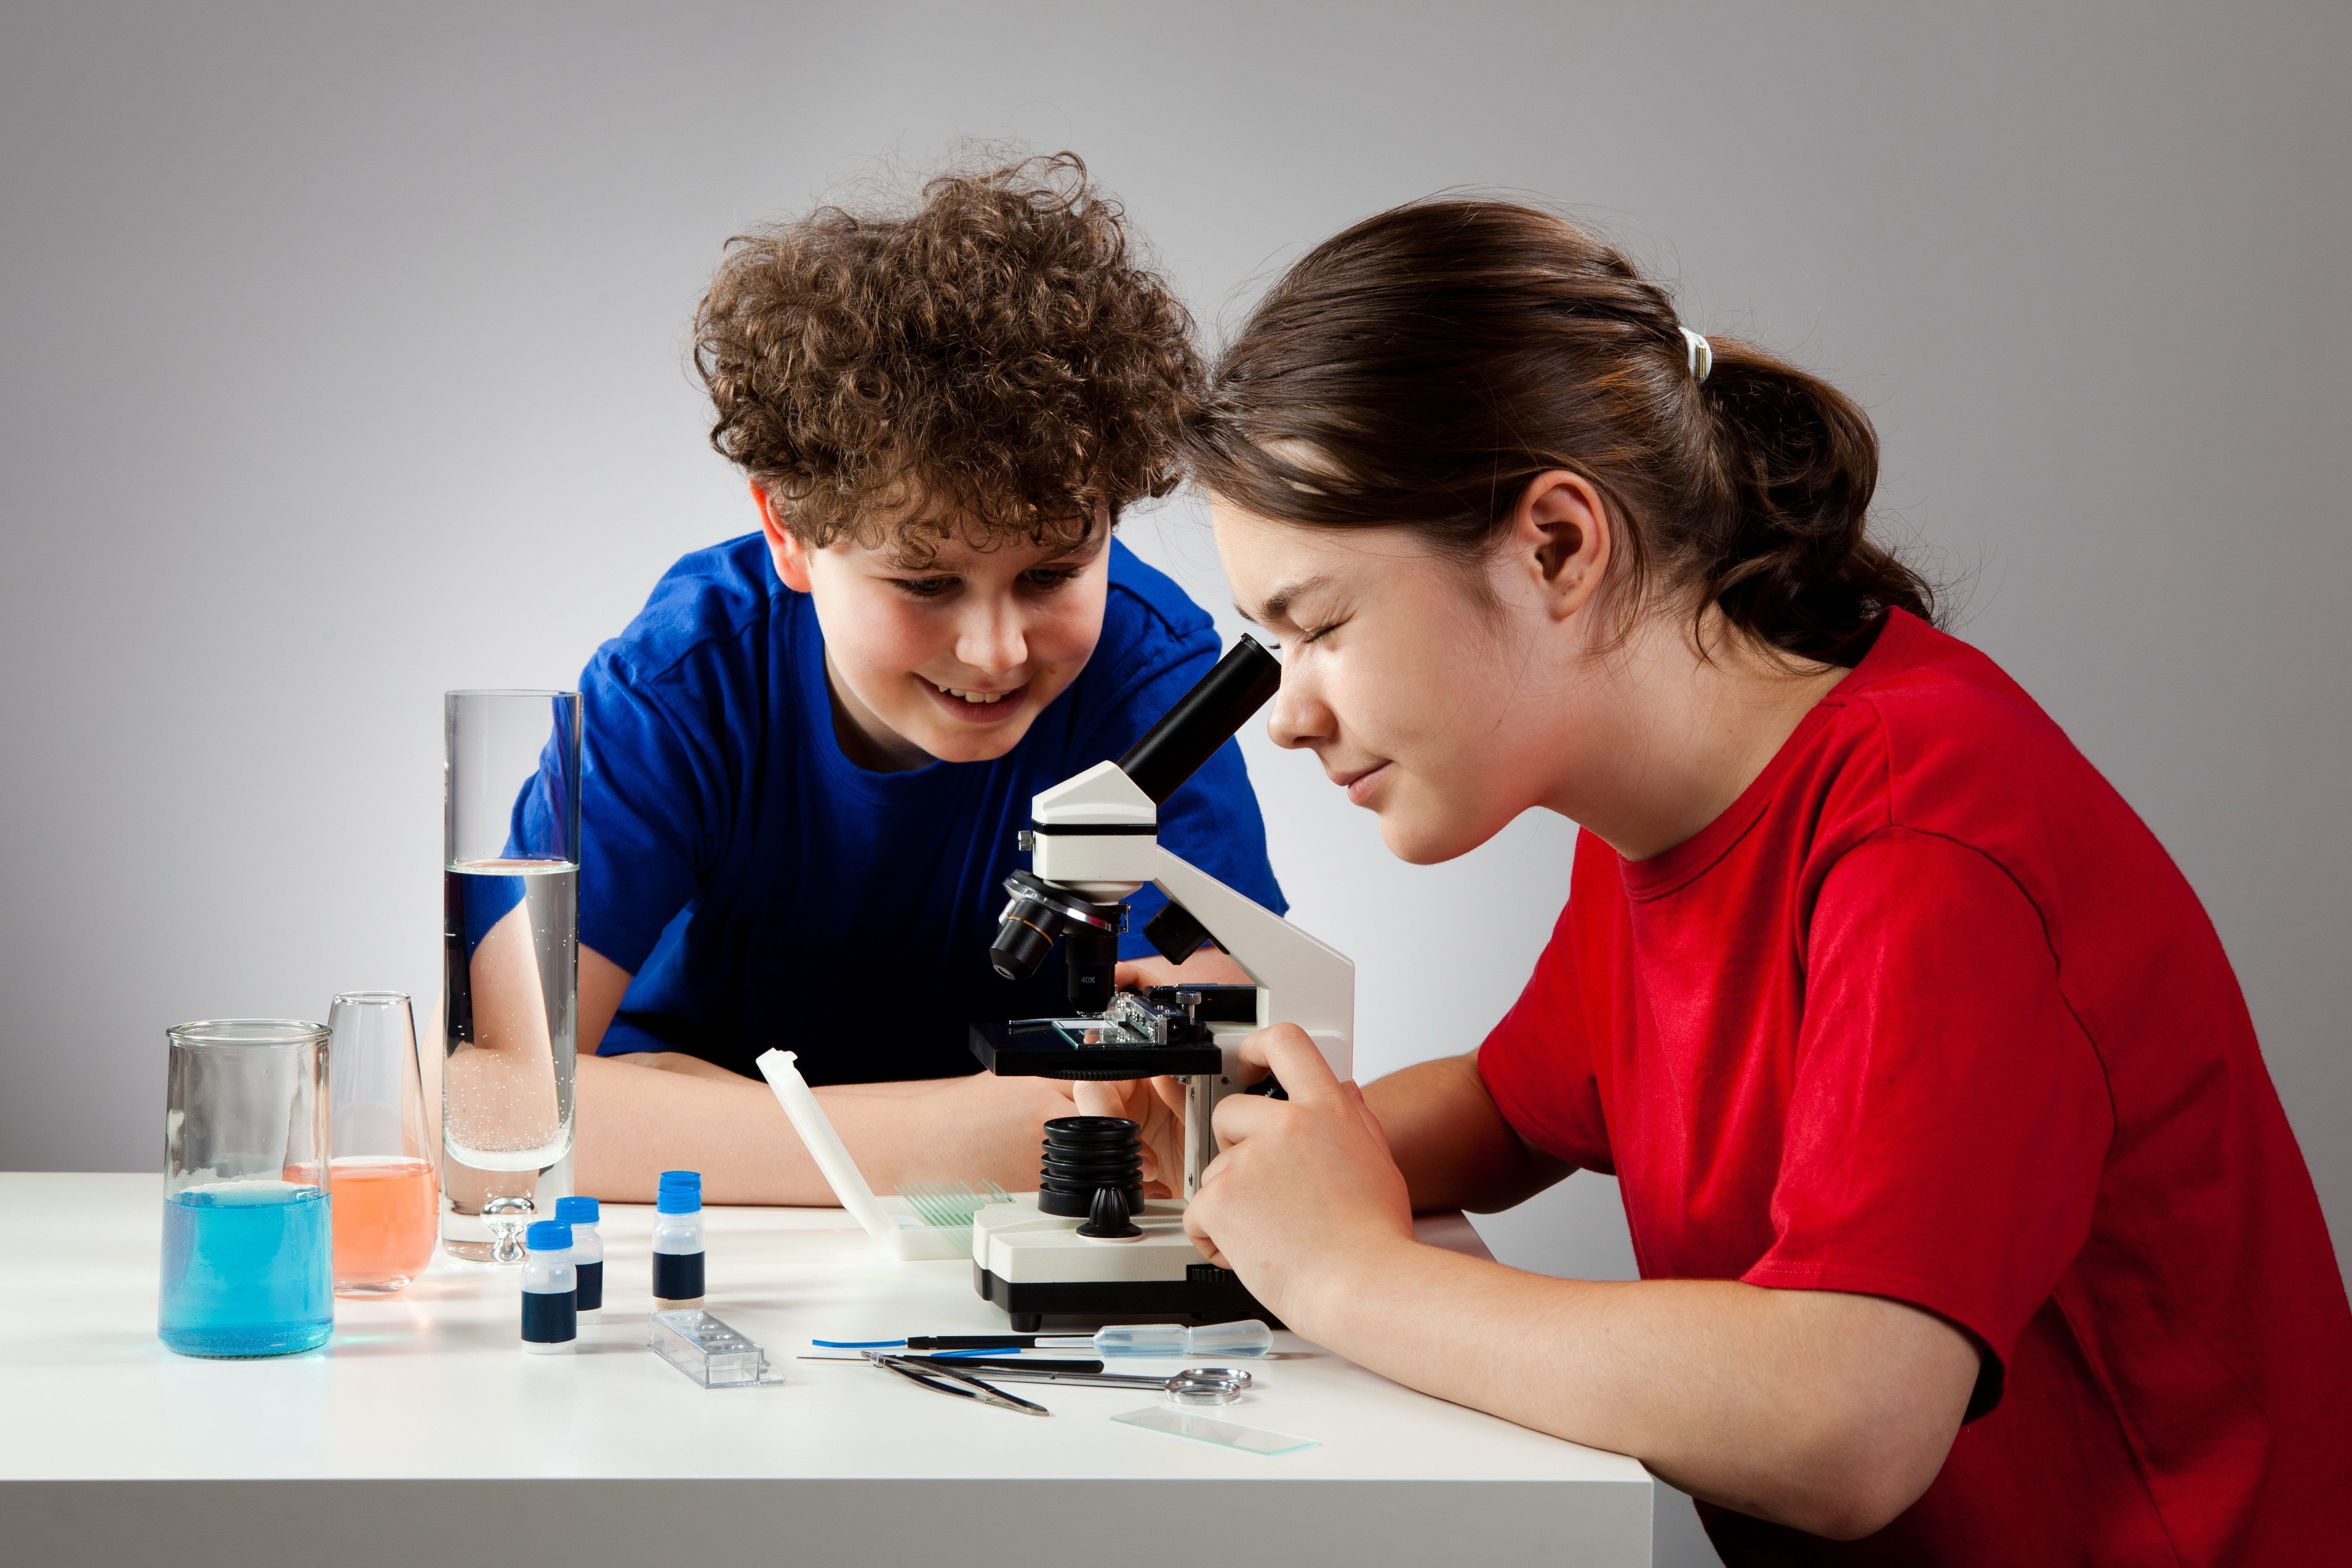 Τα καλύτερα μικροσκόπια για μαθητές και μαθητές το 2020